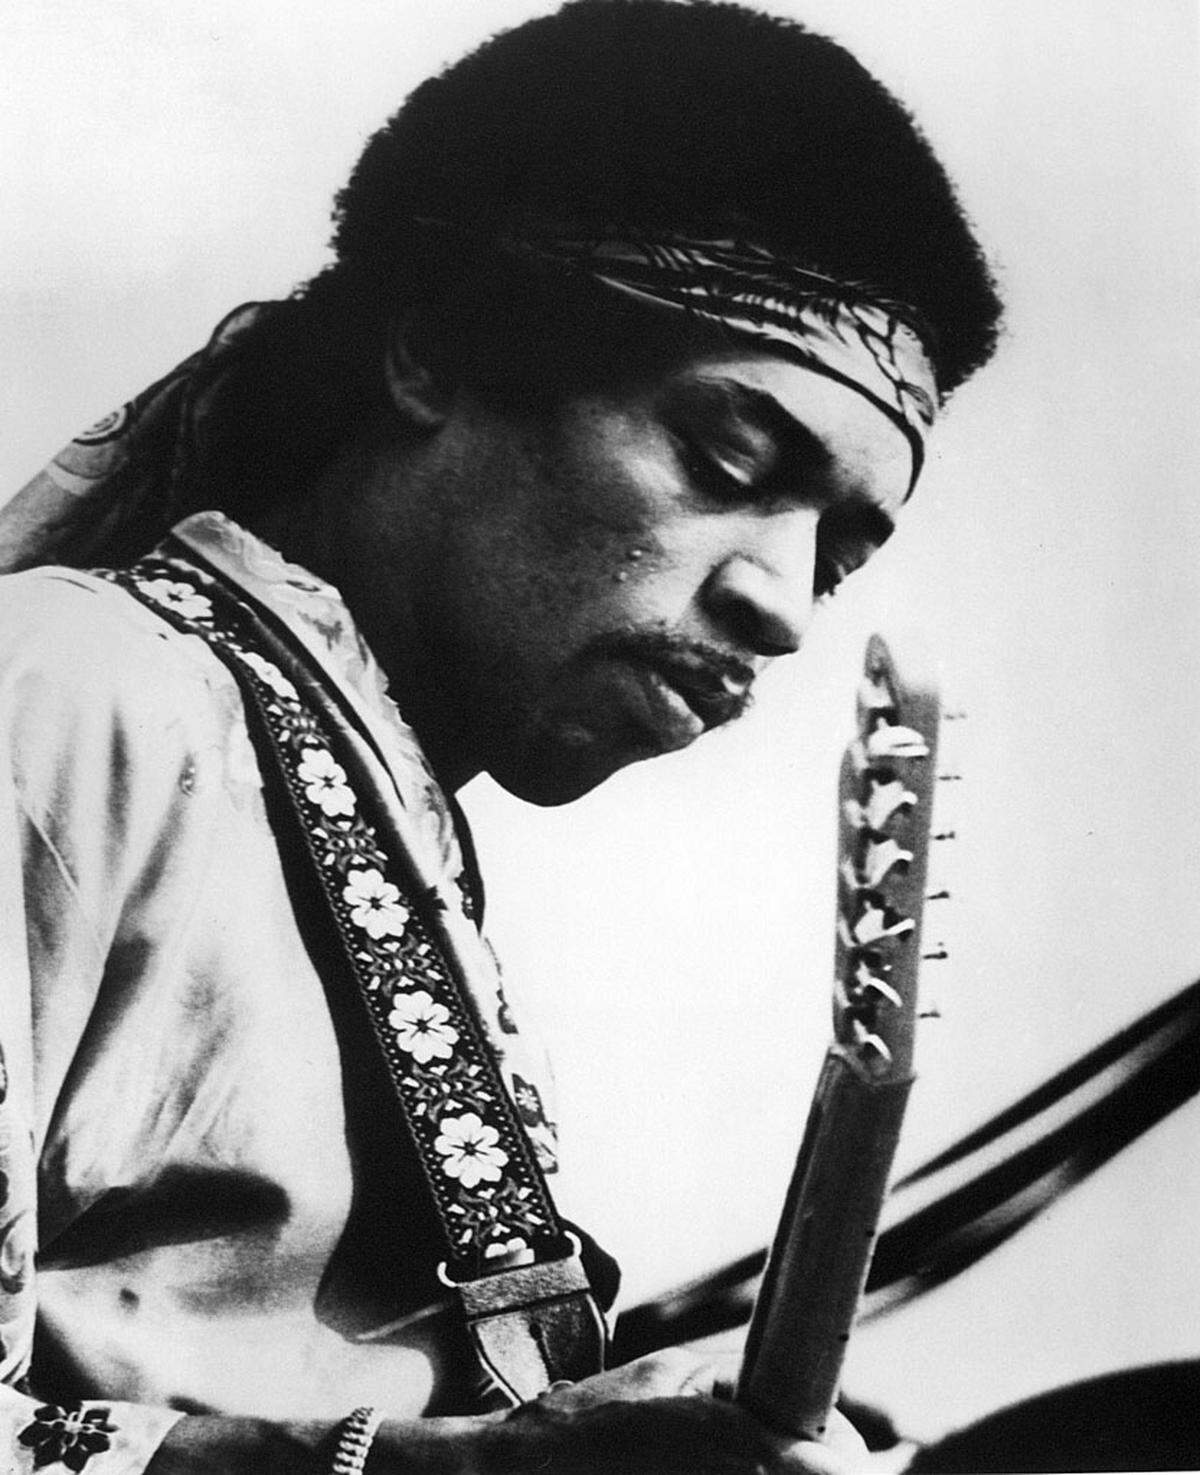 Jimi Hendrix hat vor seinem Tod nur drei Alben veröffentlicht, seine Songs prägen den Rock bis heute, auch seine surreale Texte, wie etwa "Excuse me, while I kiss the sky" aus "Purple Haze". Frei war auch seine Rechtschreibung: Aus "child" machte er einfach "chile".  Als großer Bewunderer von Bob Dylan interpretierte er auch seinen Song "All Along the Watchtower" - niemand hätte es besser machen können.